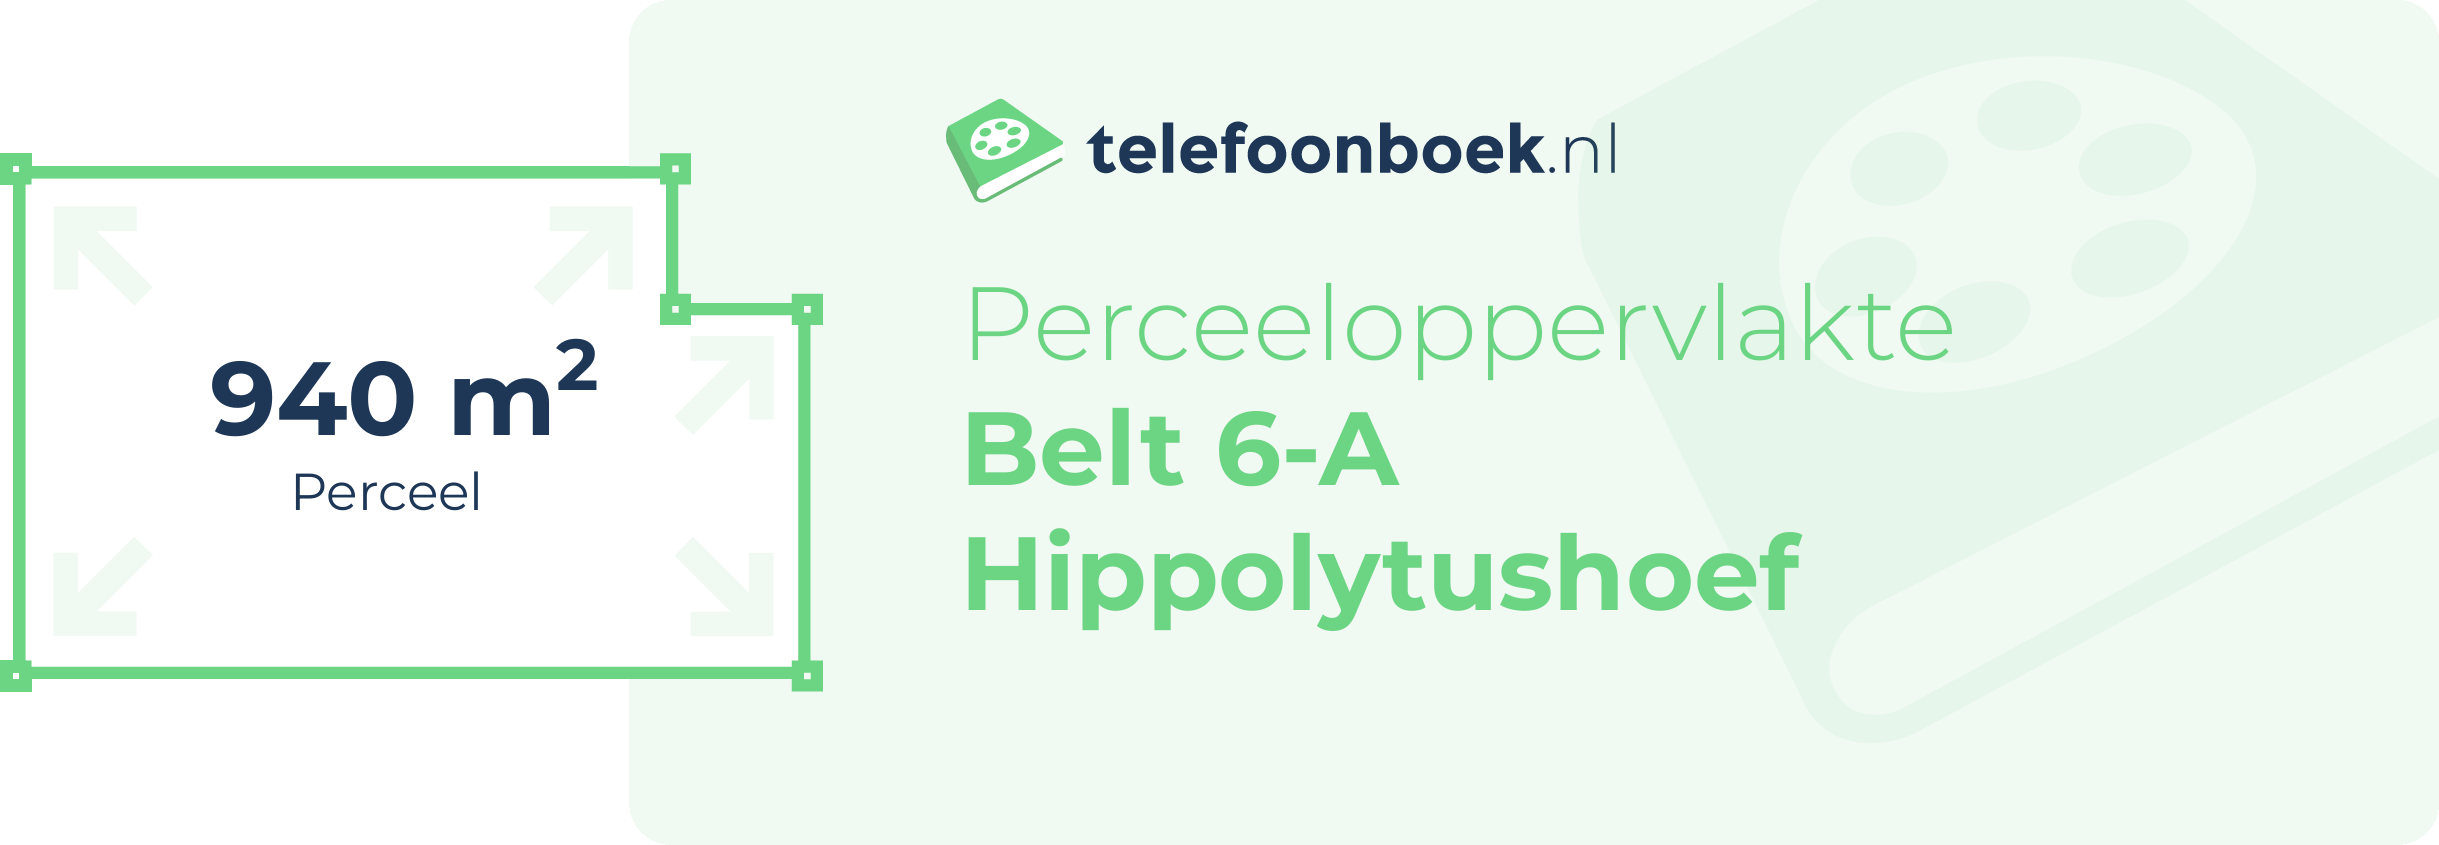 Perceeloppervlakte Belt 6-A Hippolytushoef